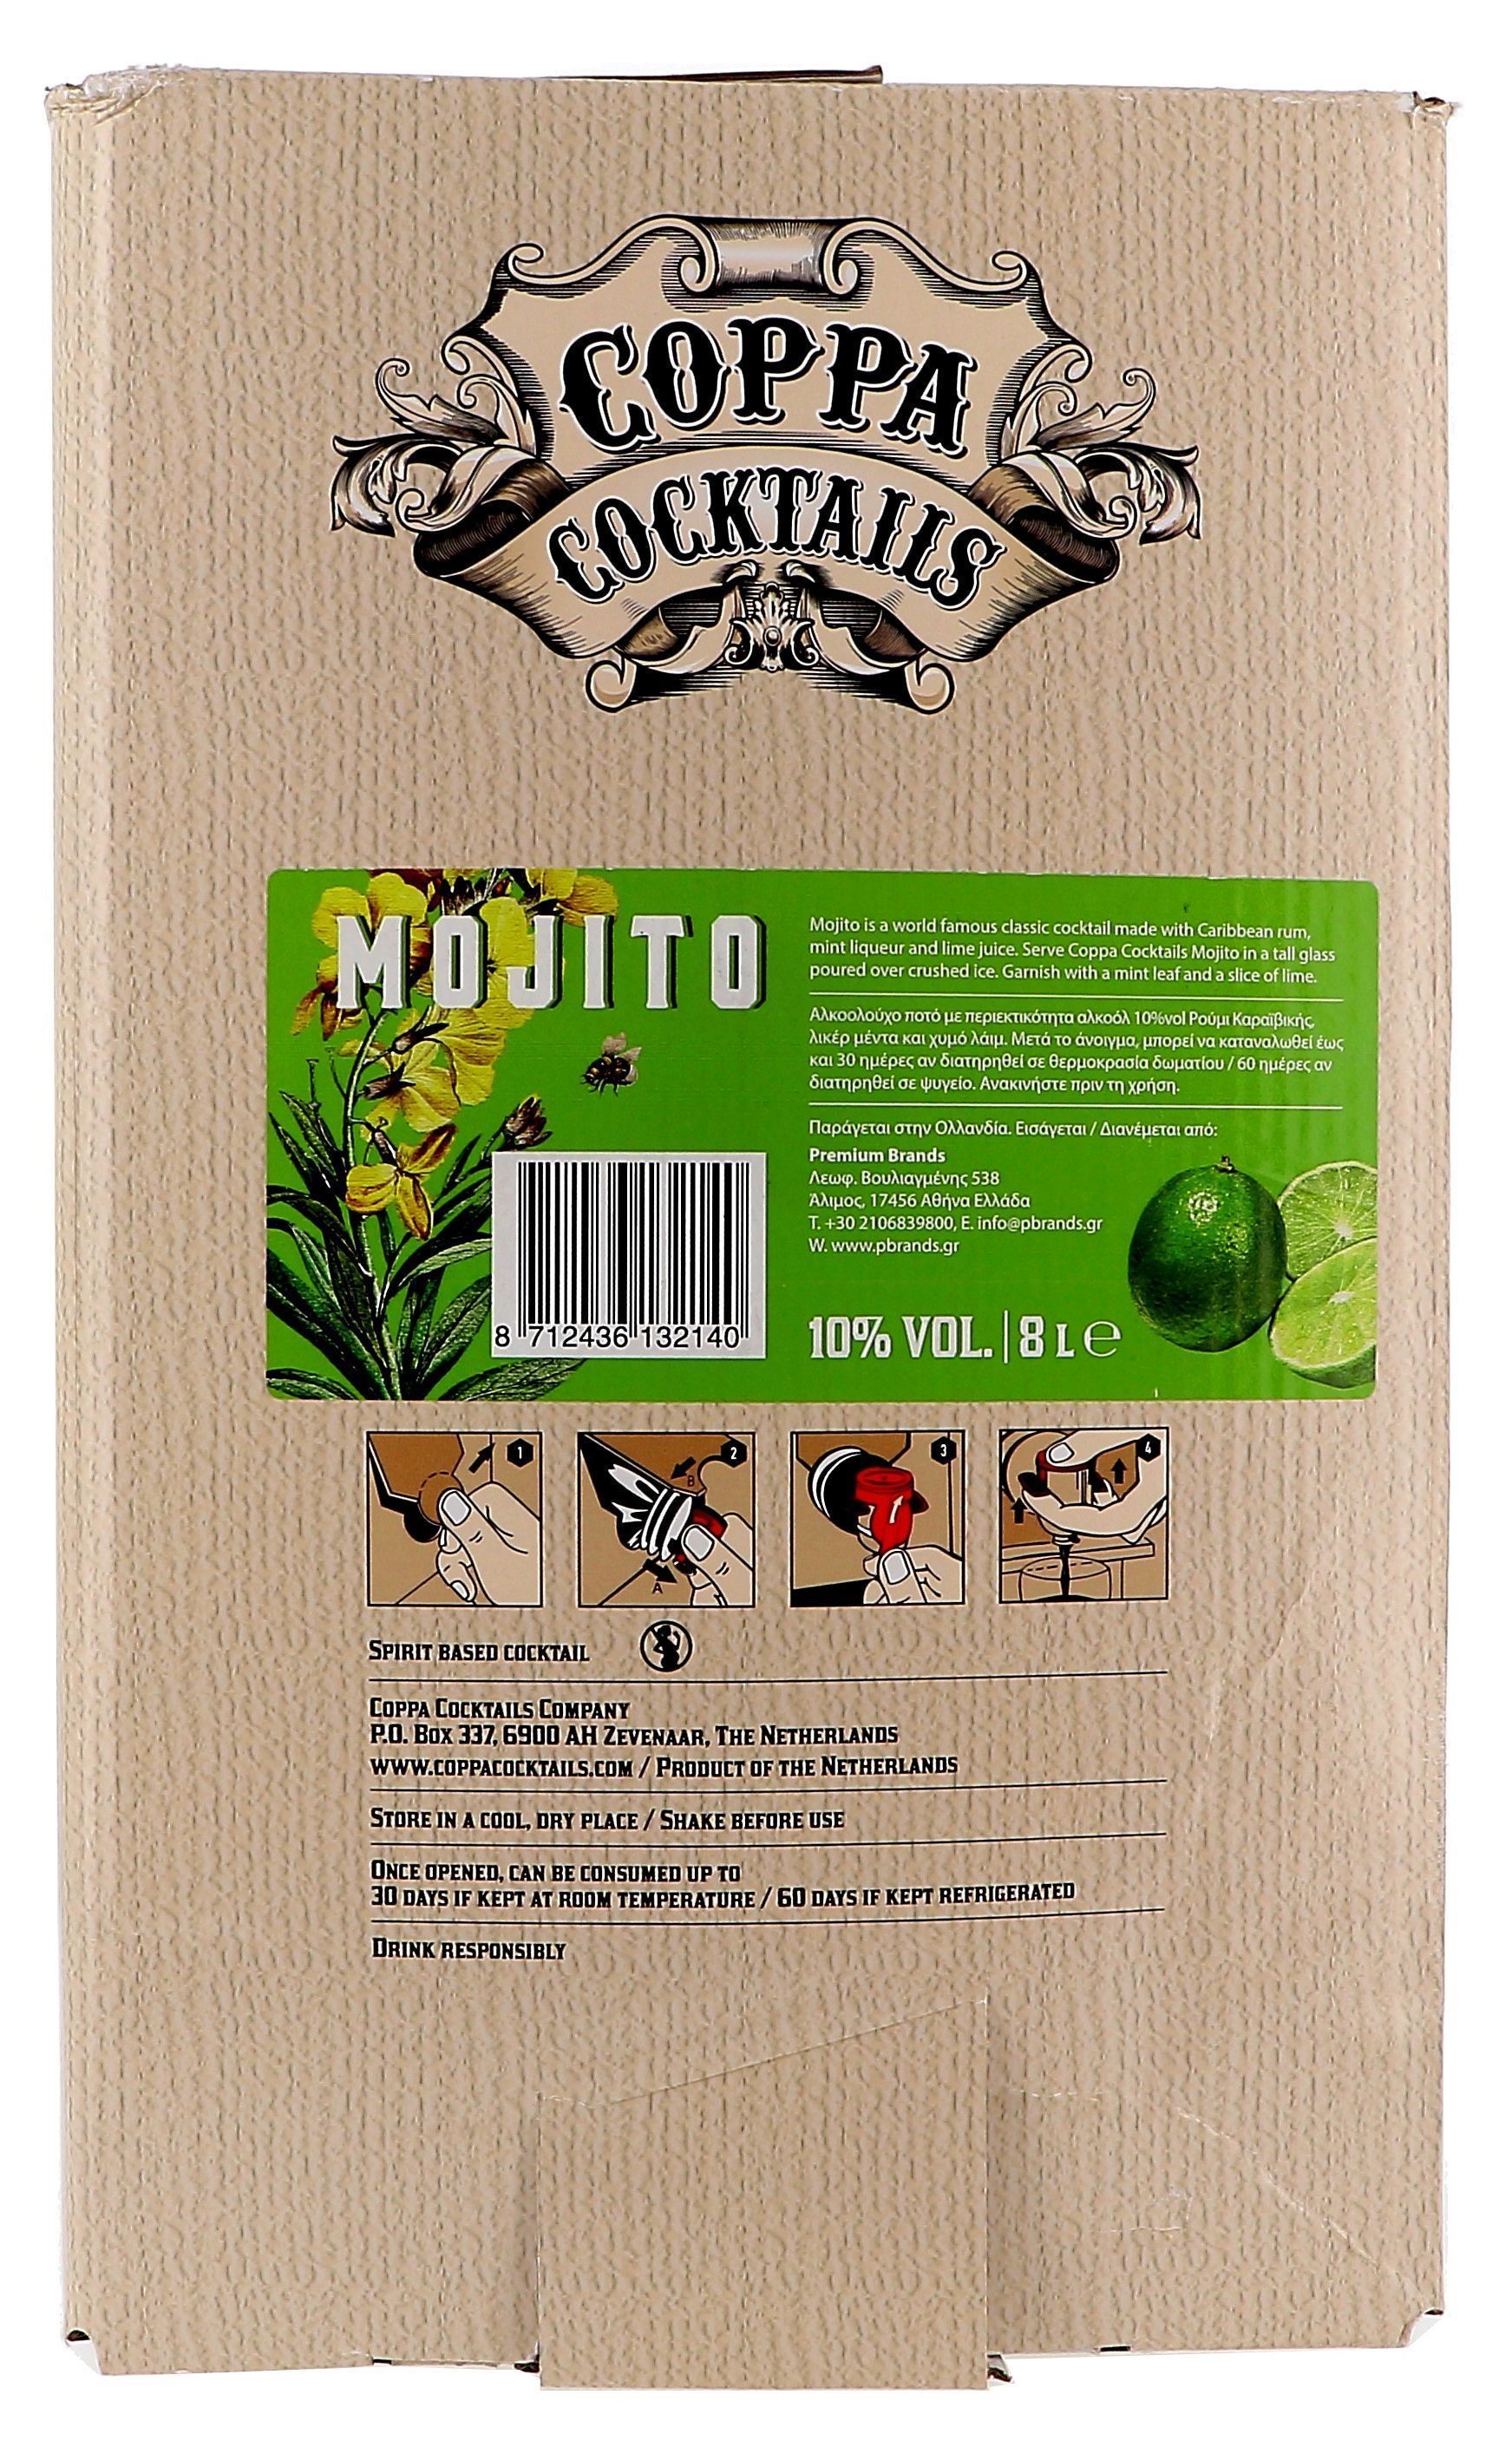 Coppa Cocktails Mojito 8L 10% Bag in Box